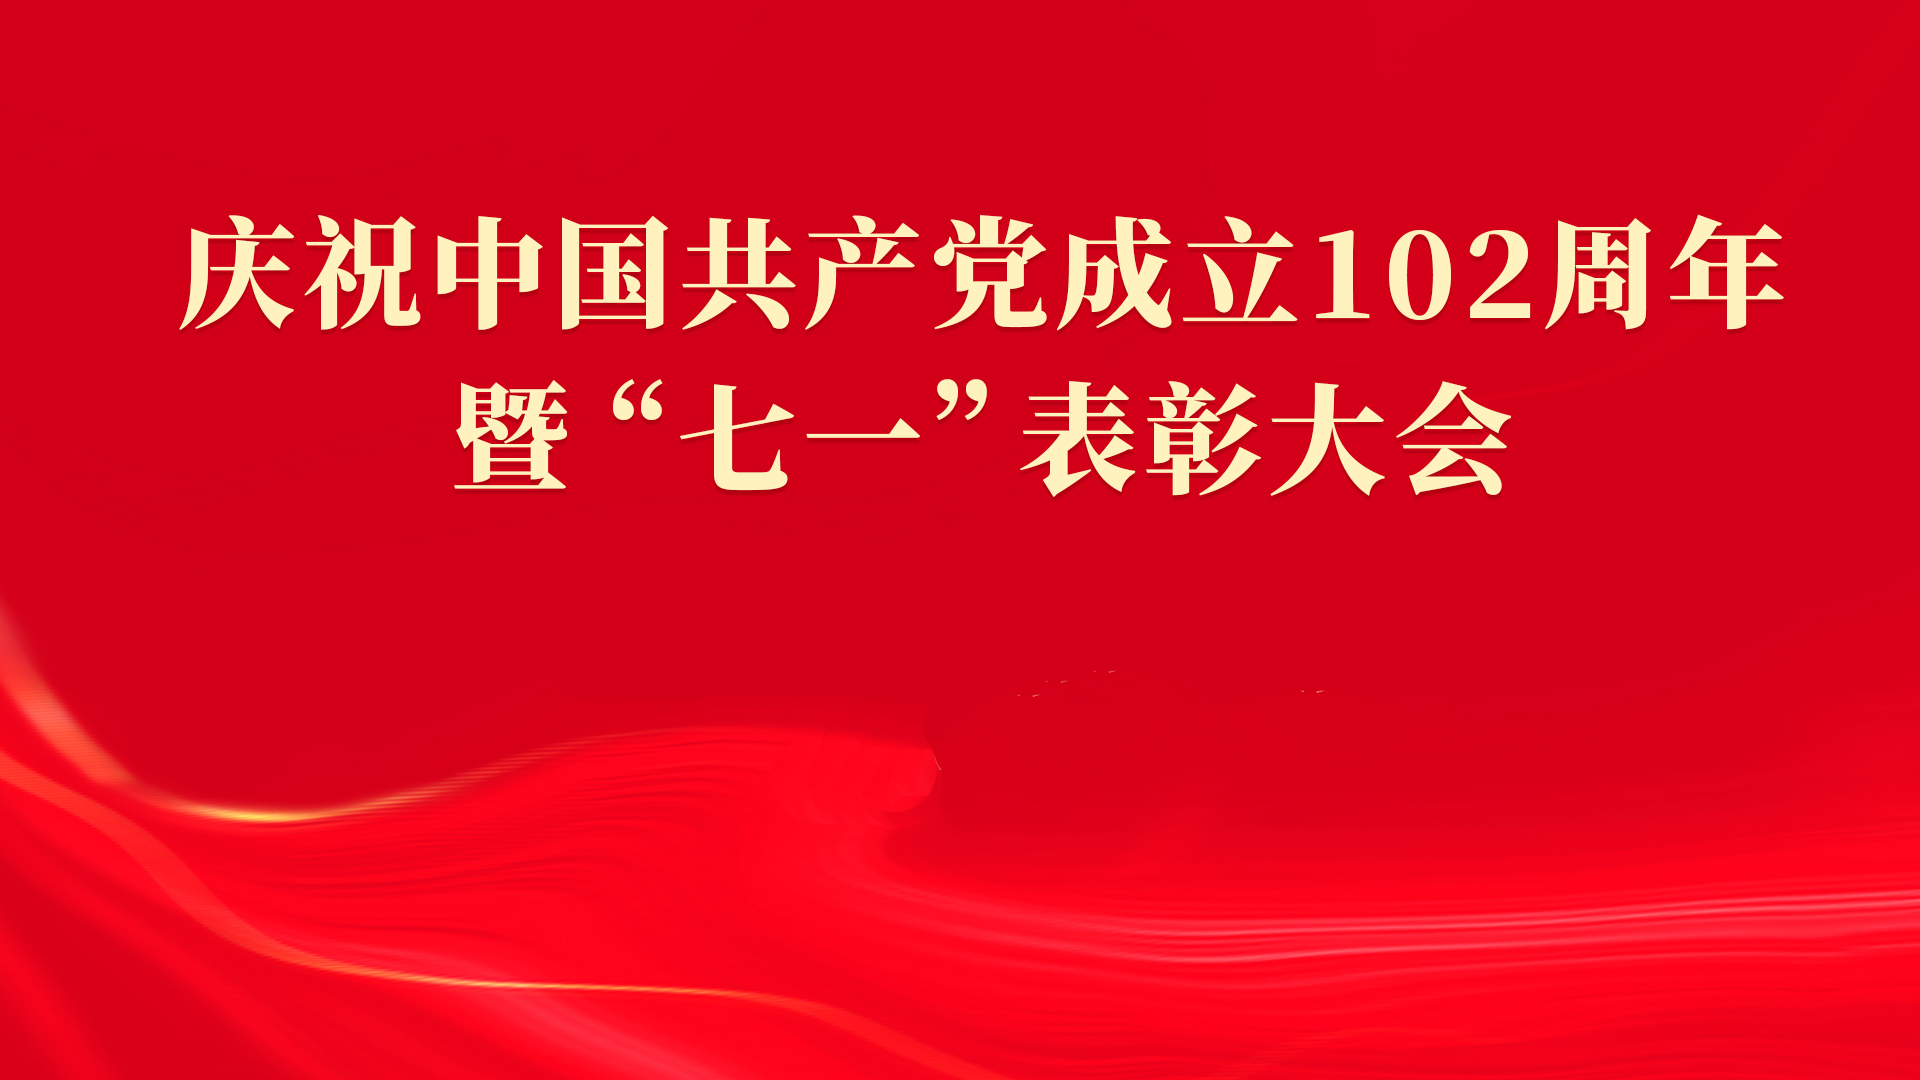 長沙市產投集團召開慶祝中國共產黨成立102周年暨“七一”表彰大會